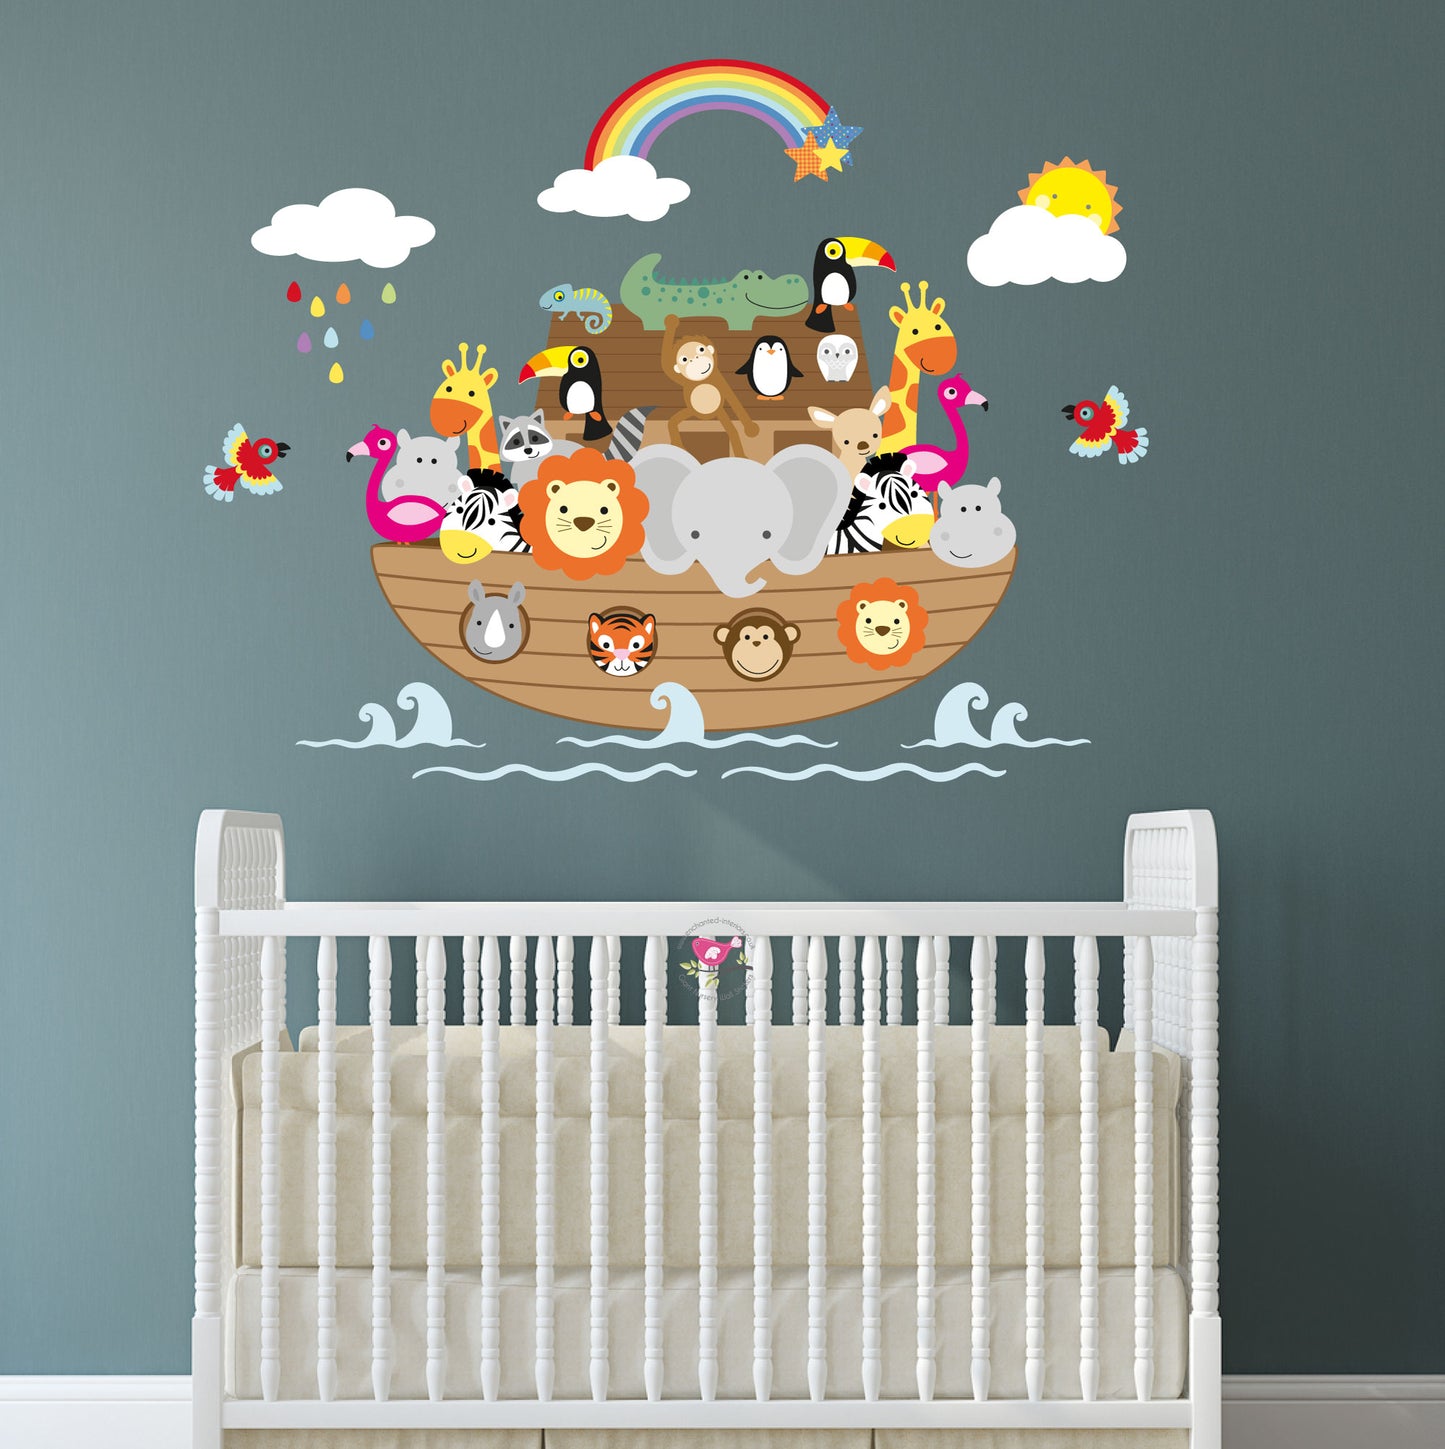 Noah's Ark Nursery Wall Stickers